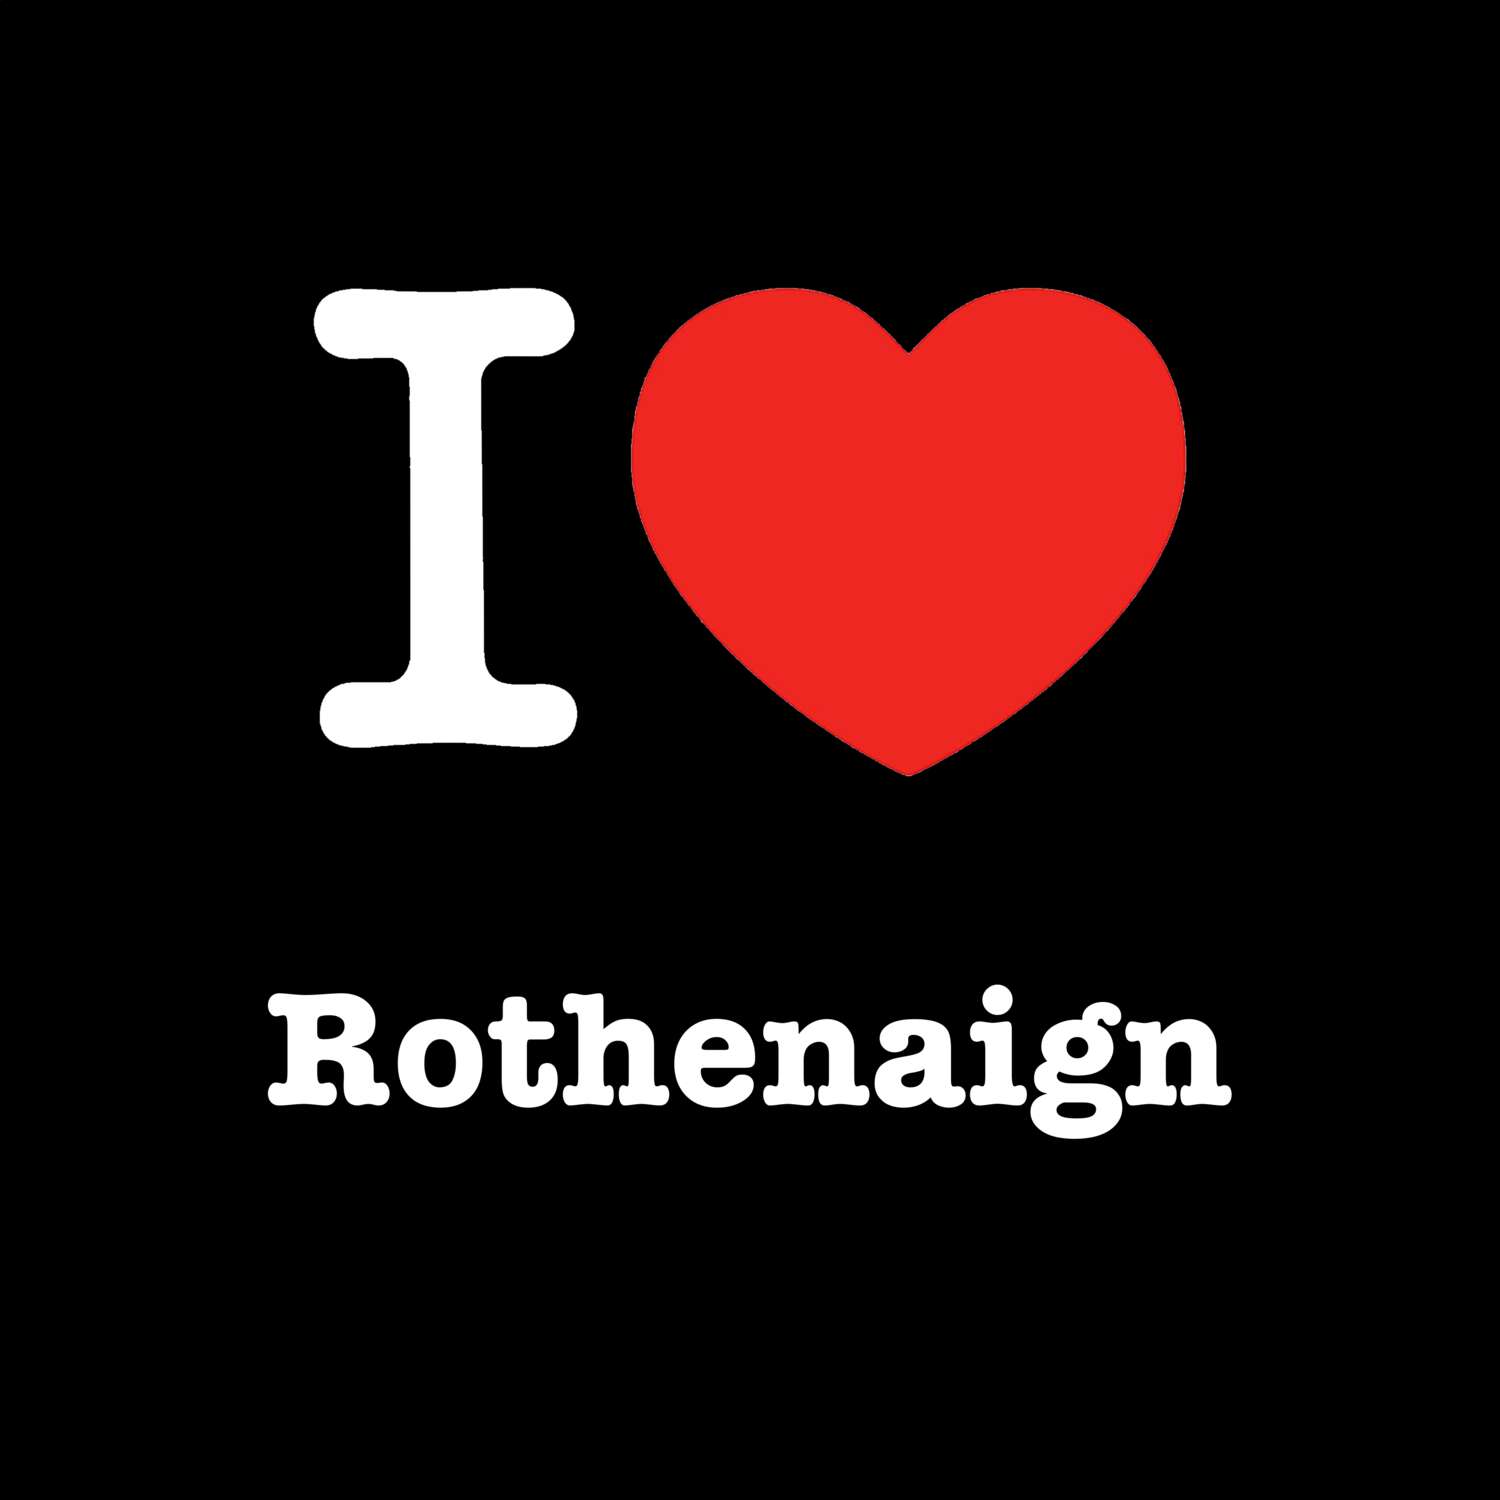 Rothenaign T-Shirt »I love«